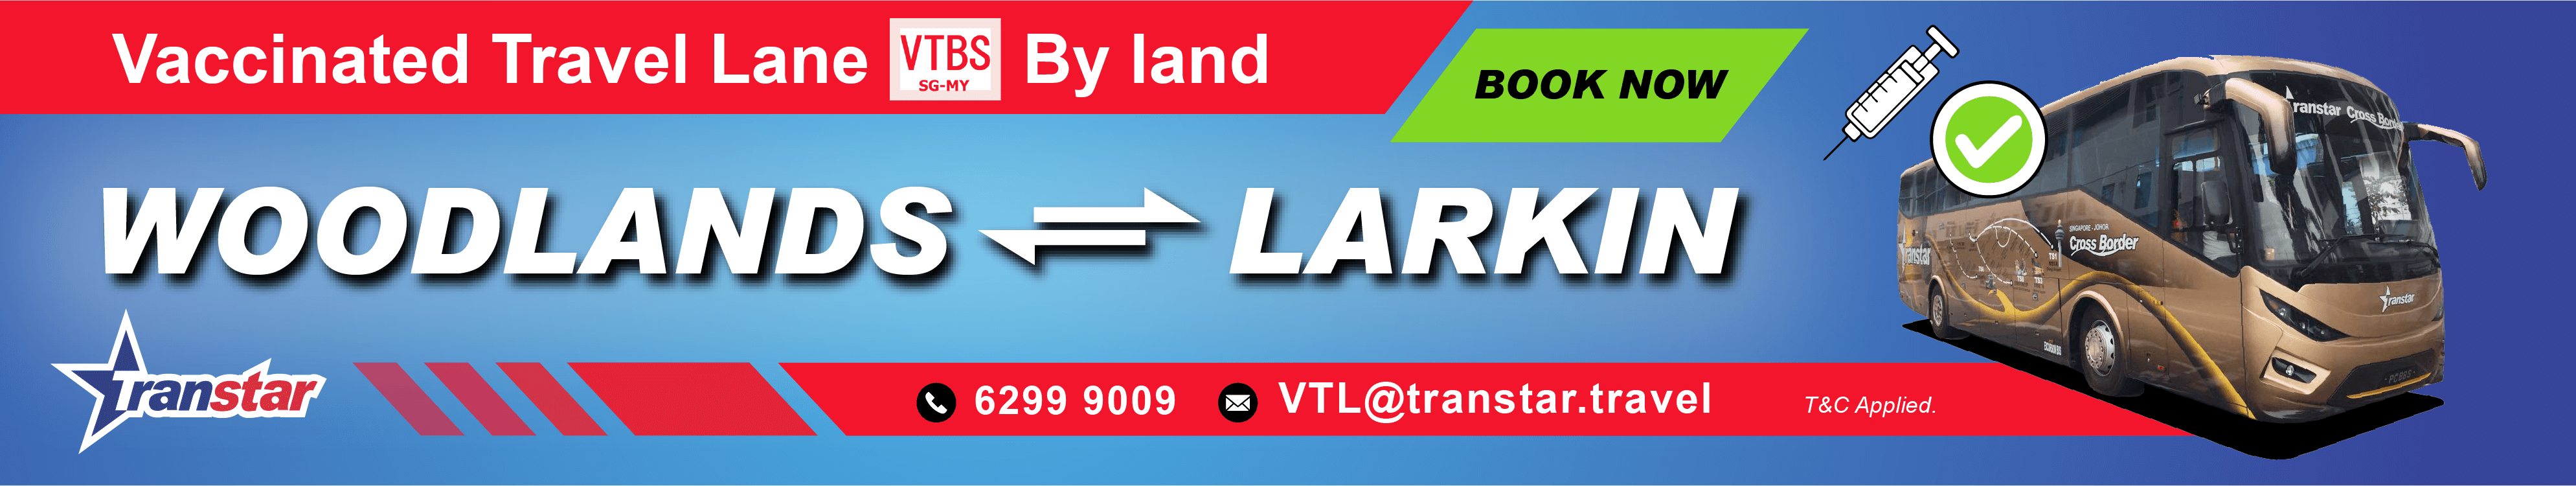 Transtar vtl ticket